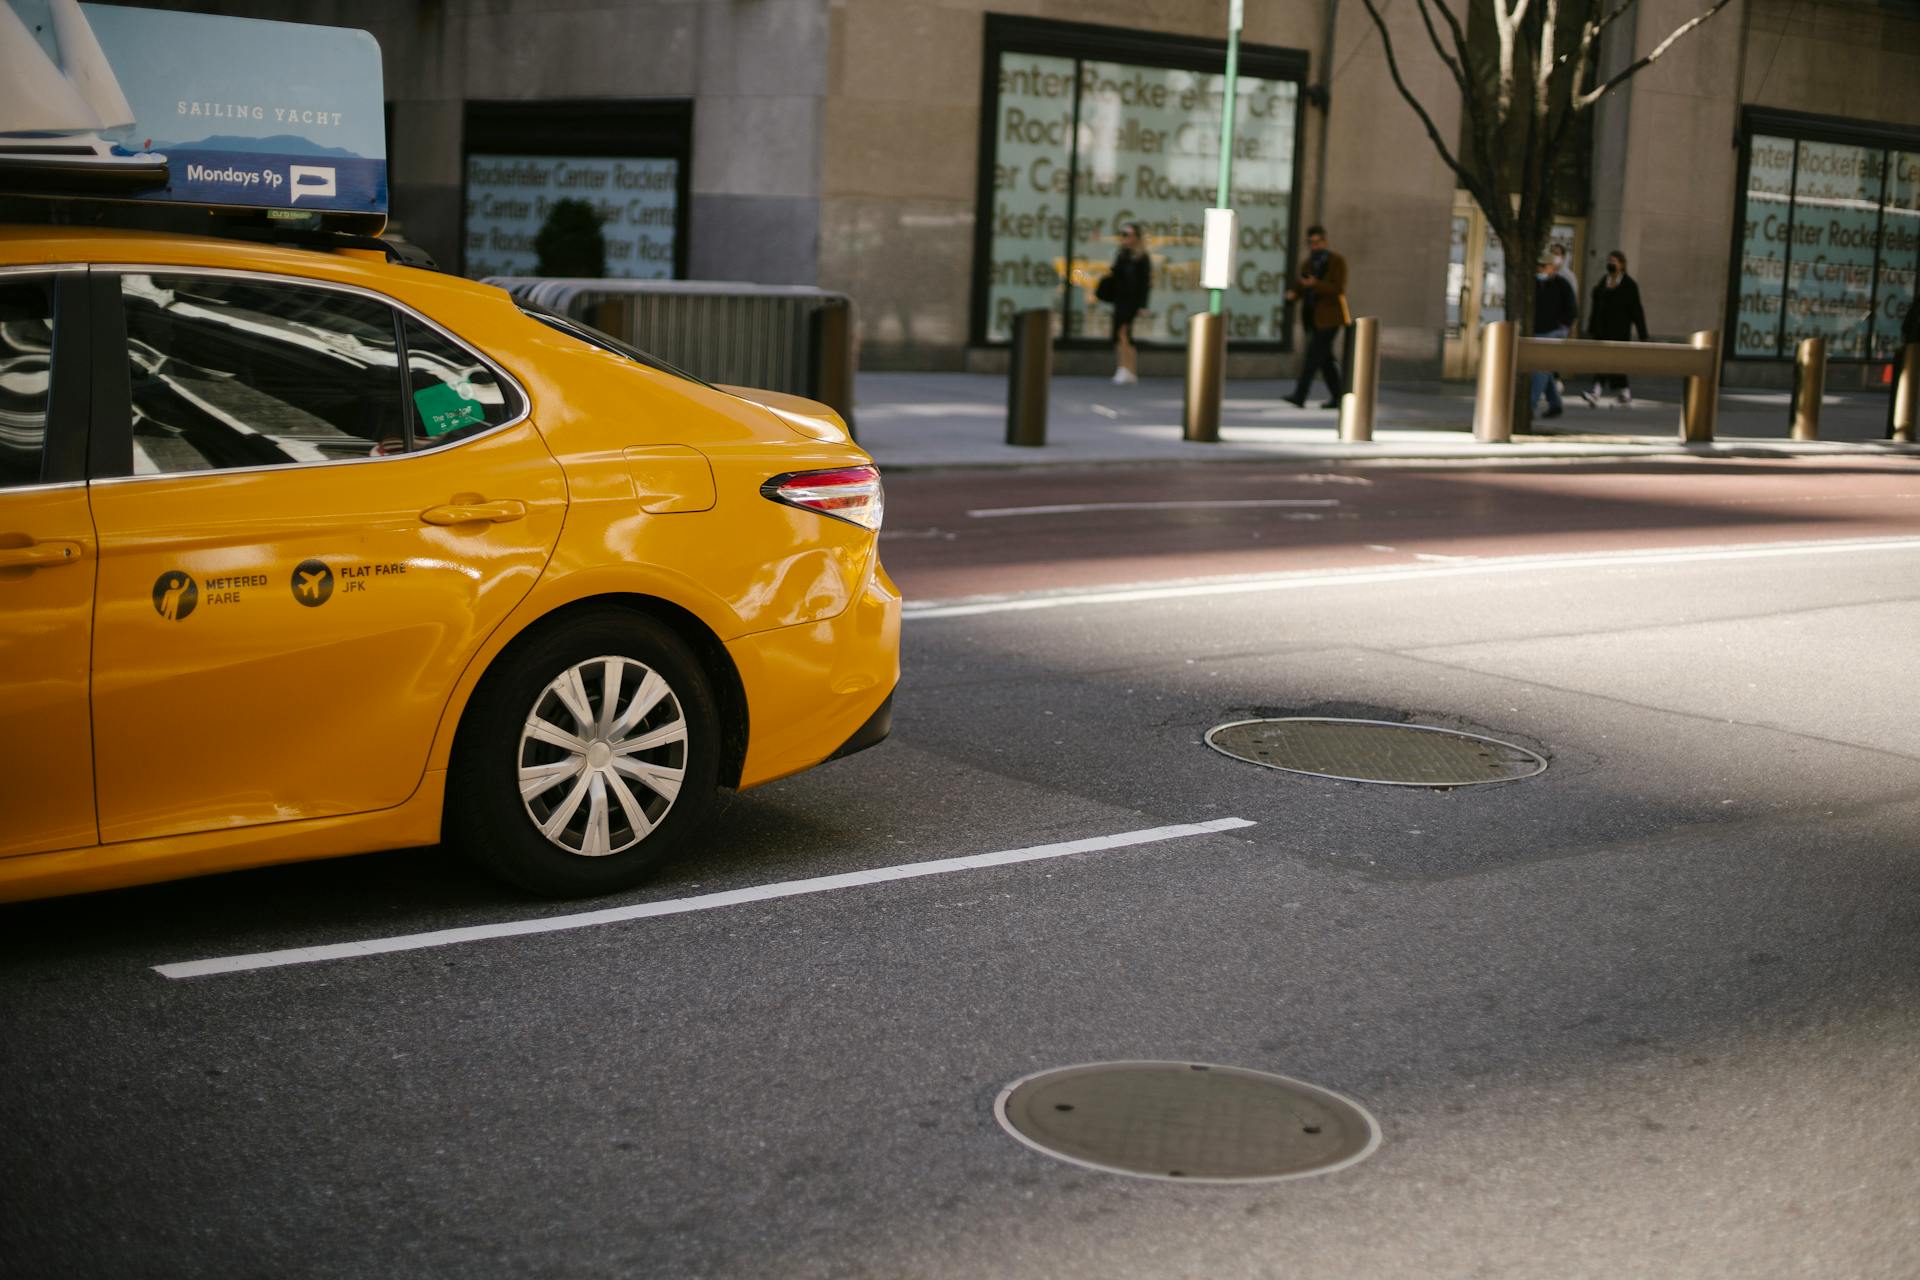 A cab | Source: Pexels